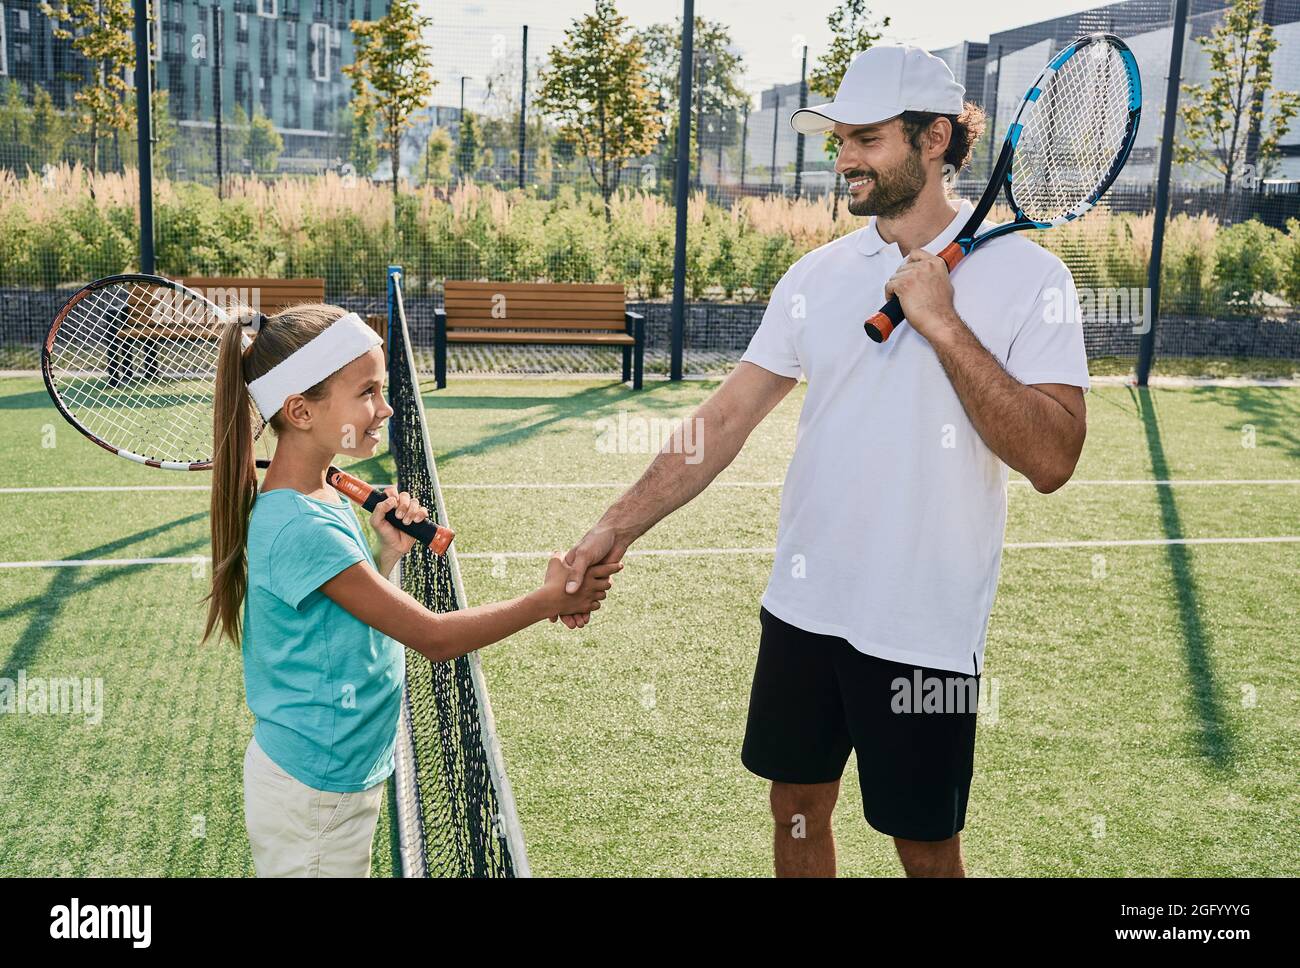 Une petite fille secoue les mains avec son entraîneur professionnel près du filet de tennis avant de jouer au tennis. Apprentissage du tennis pour les enfants Banque D'Images